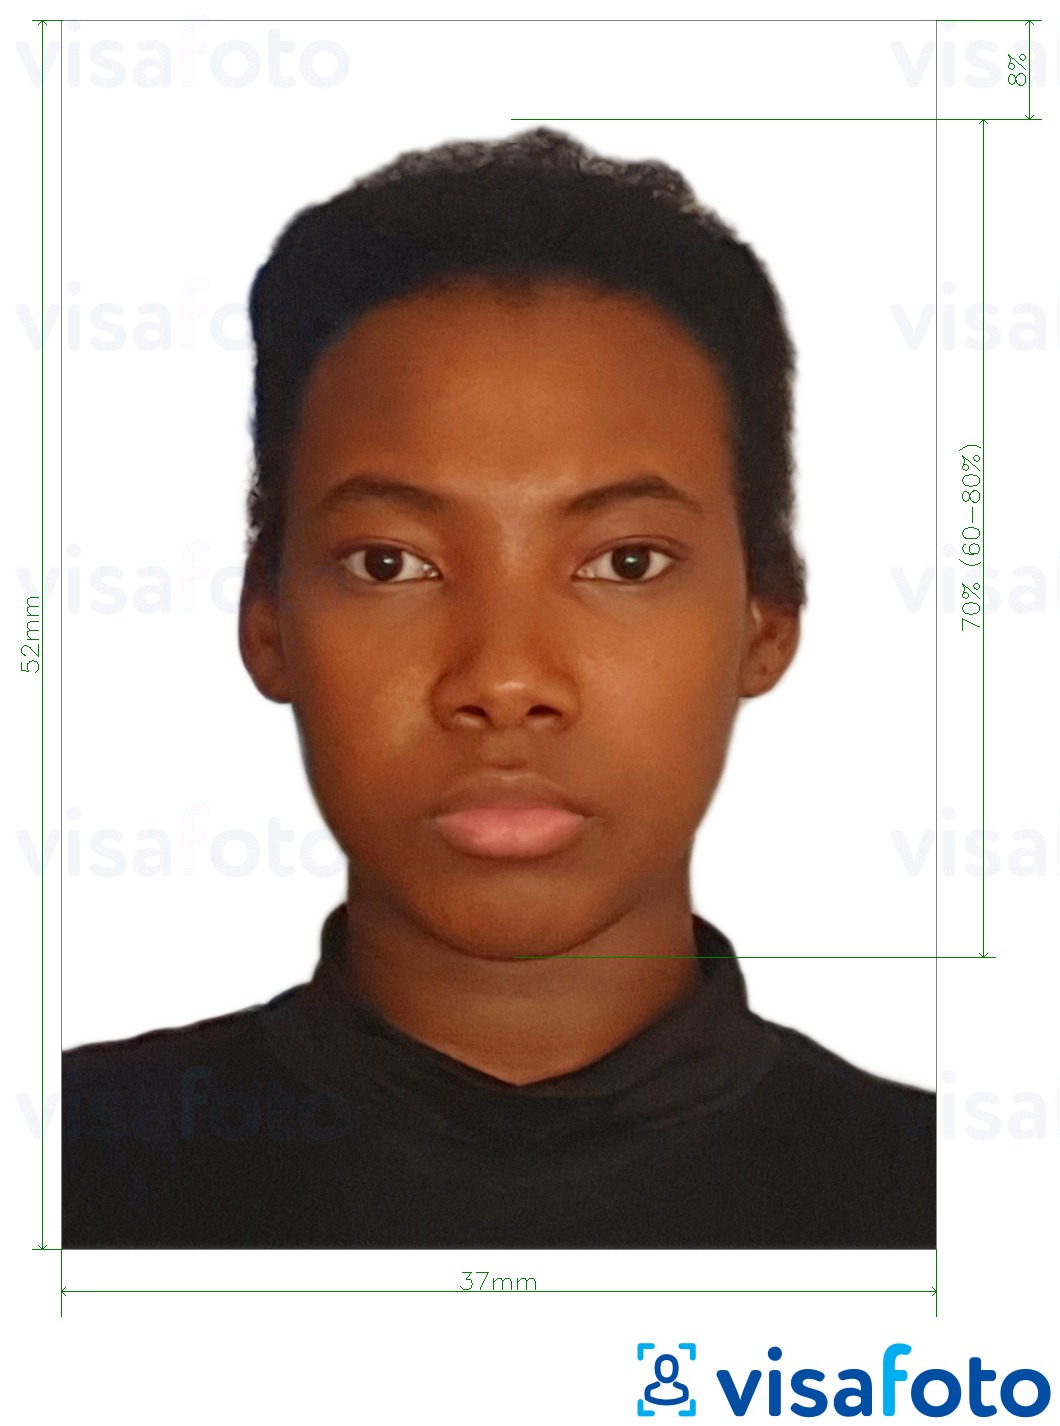 Exemples sur des photos pour Namibie passeport 37x52mm (3.7x5.2 cm) avec les spécifications de taille exactes